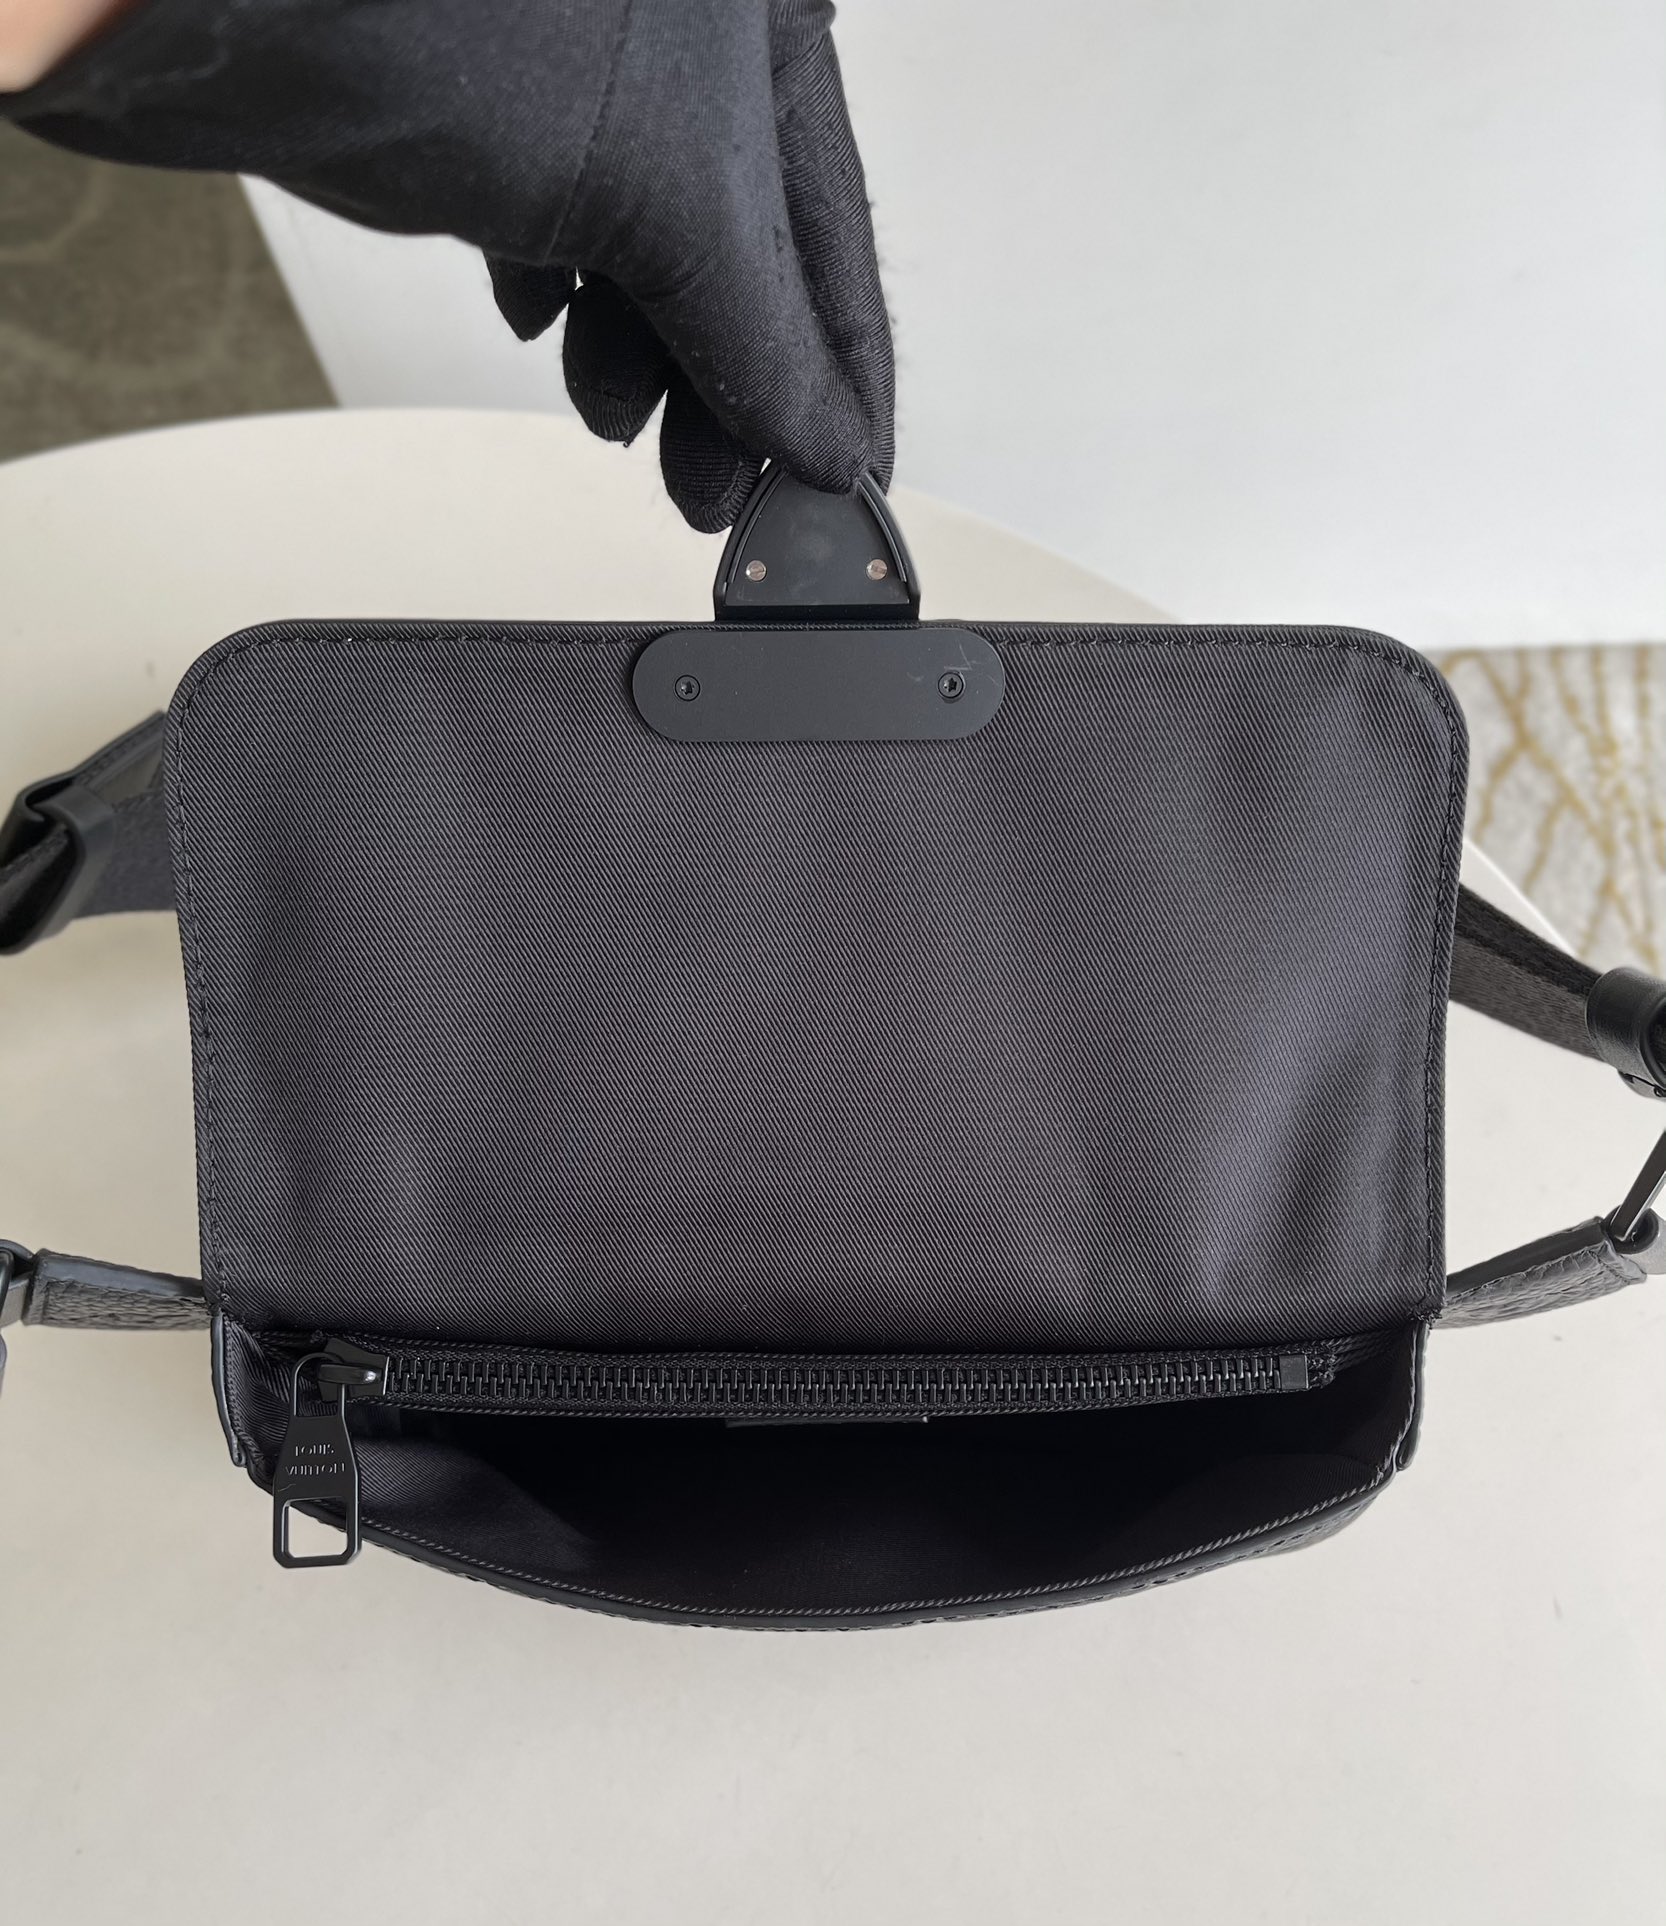 Louis Vuitton MONOGRAM S Lock Sling Bag (M58487, M58486)